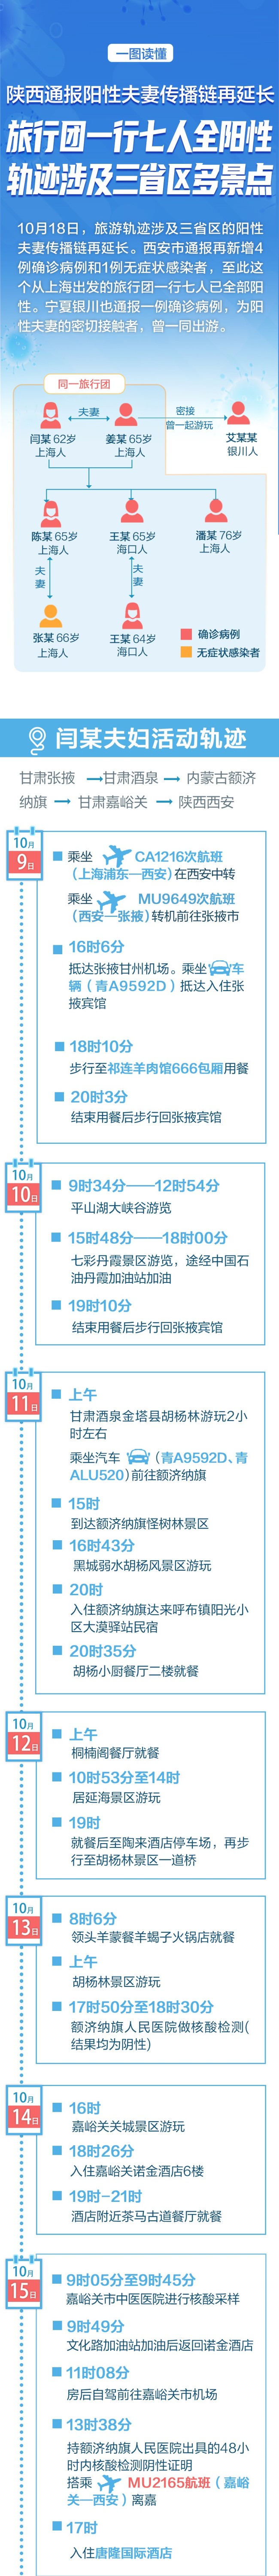 一图读懂陕西“旅行团传播链”：8人阳性 涉4省区